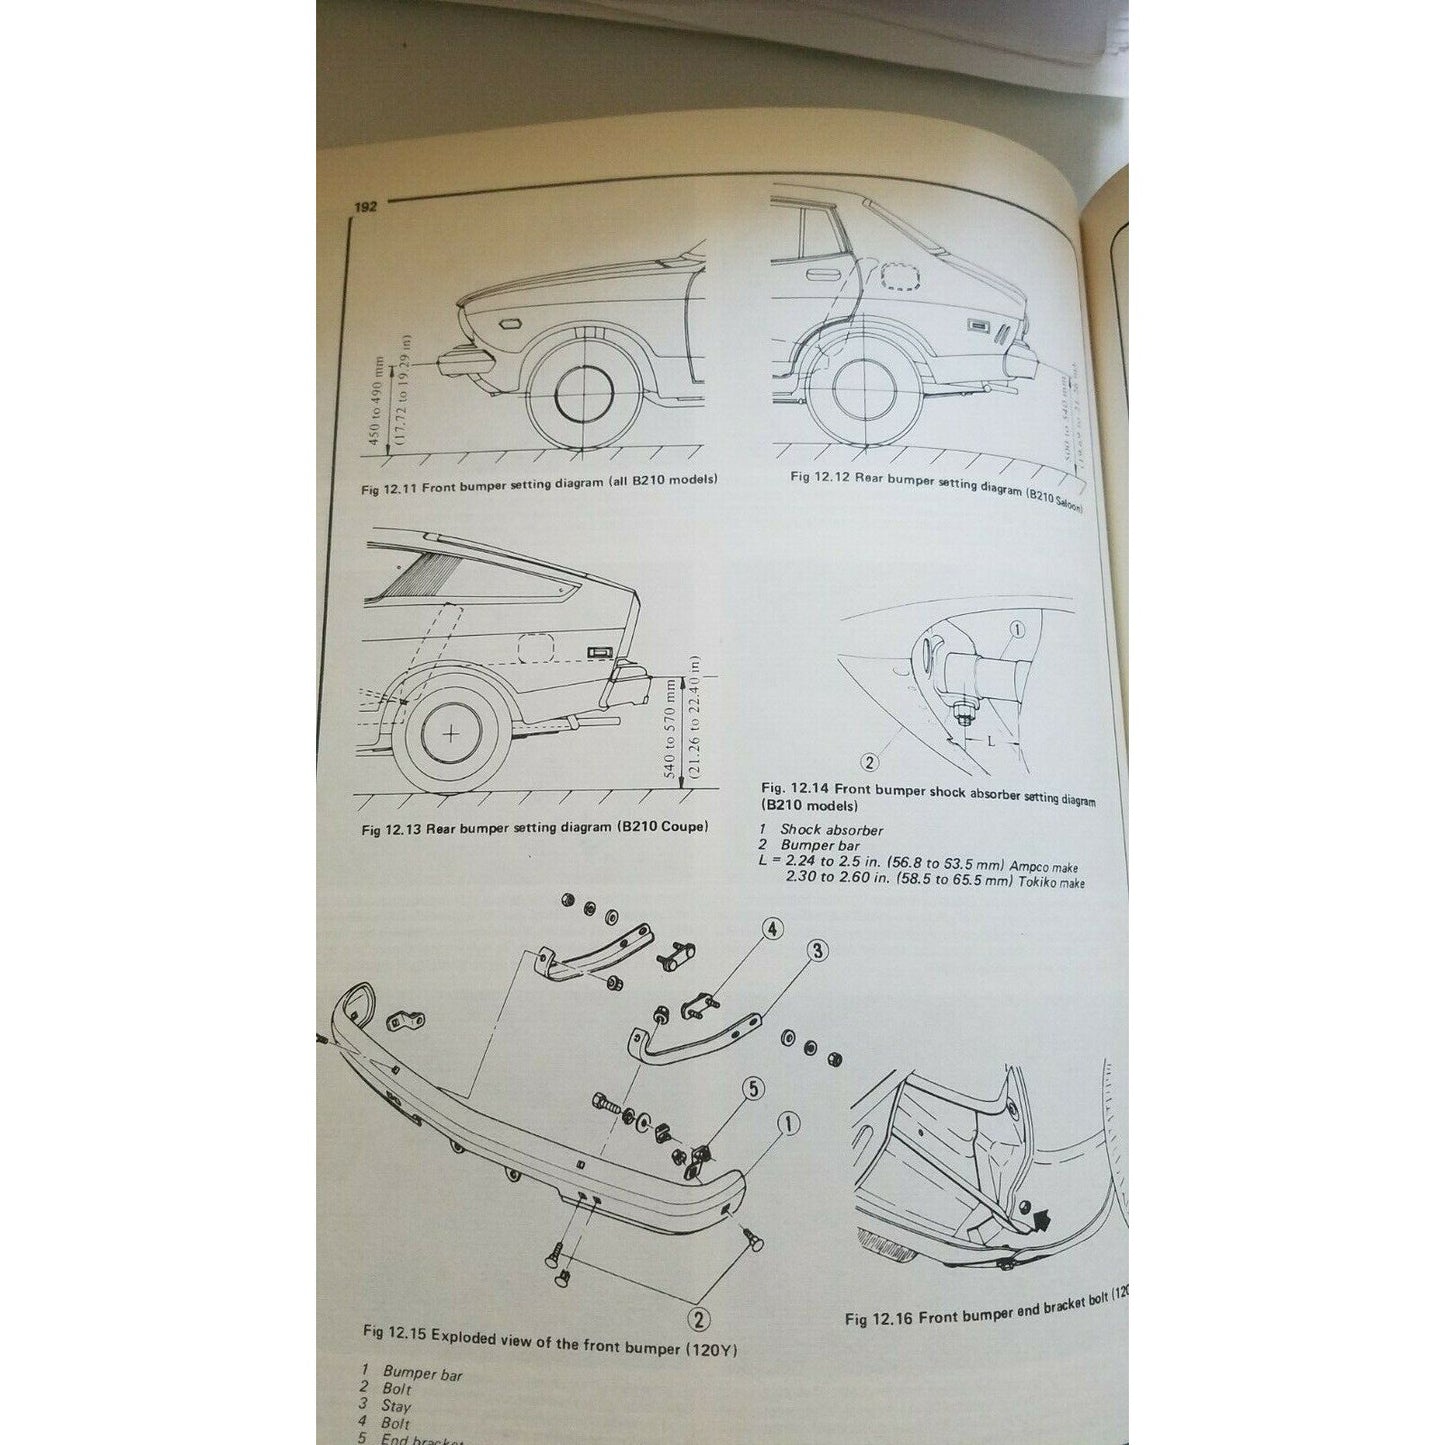 1968 -1973  Haynes Volkswagen  411  412  103 cu 1.7 L Owners Workshop Manual